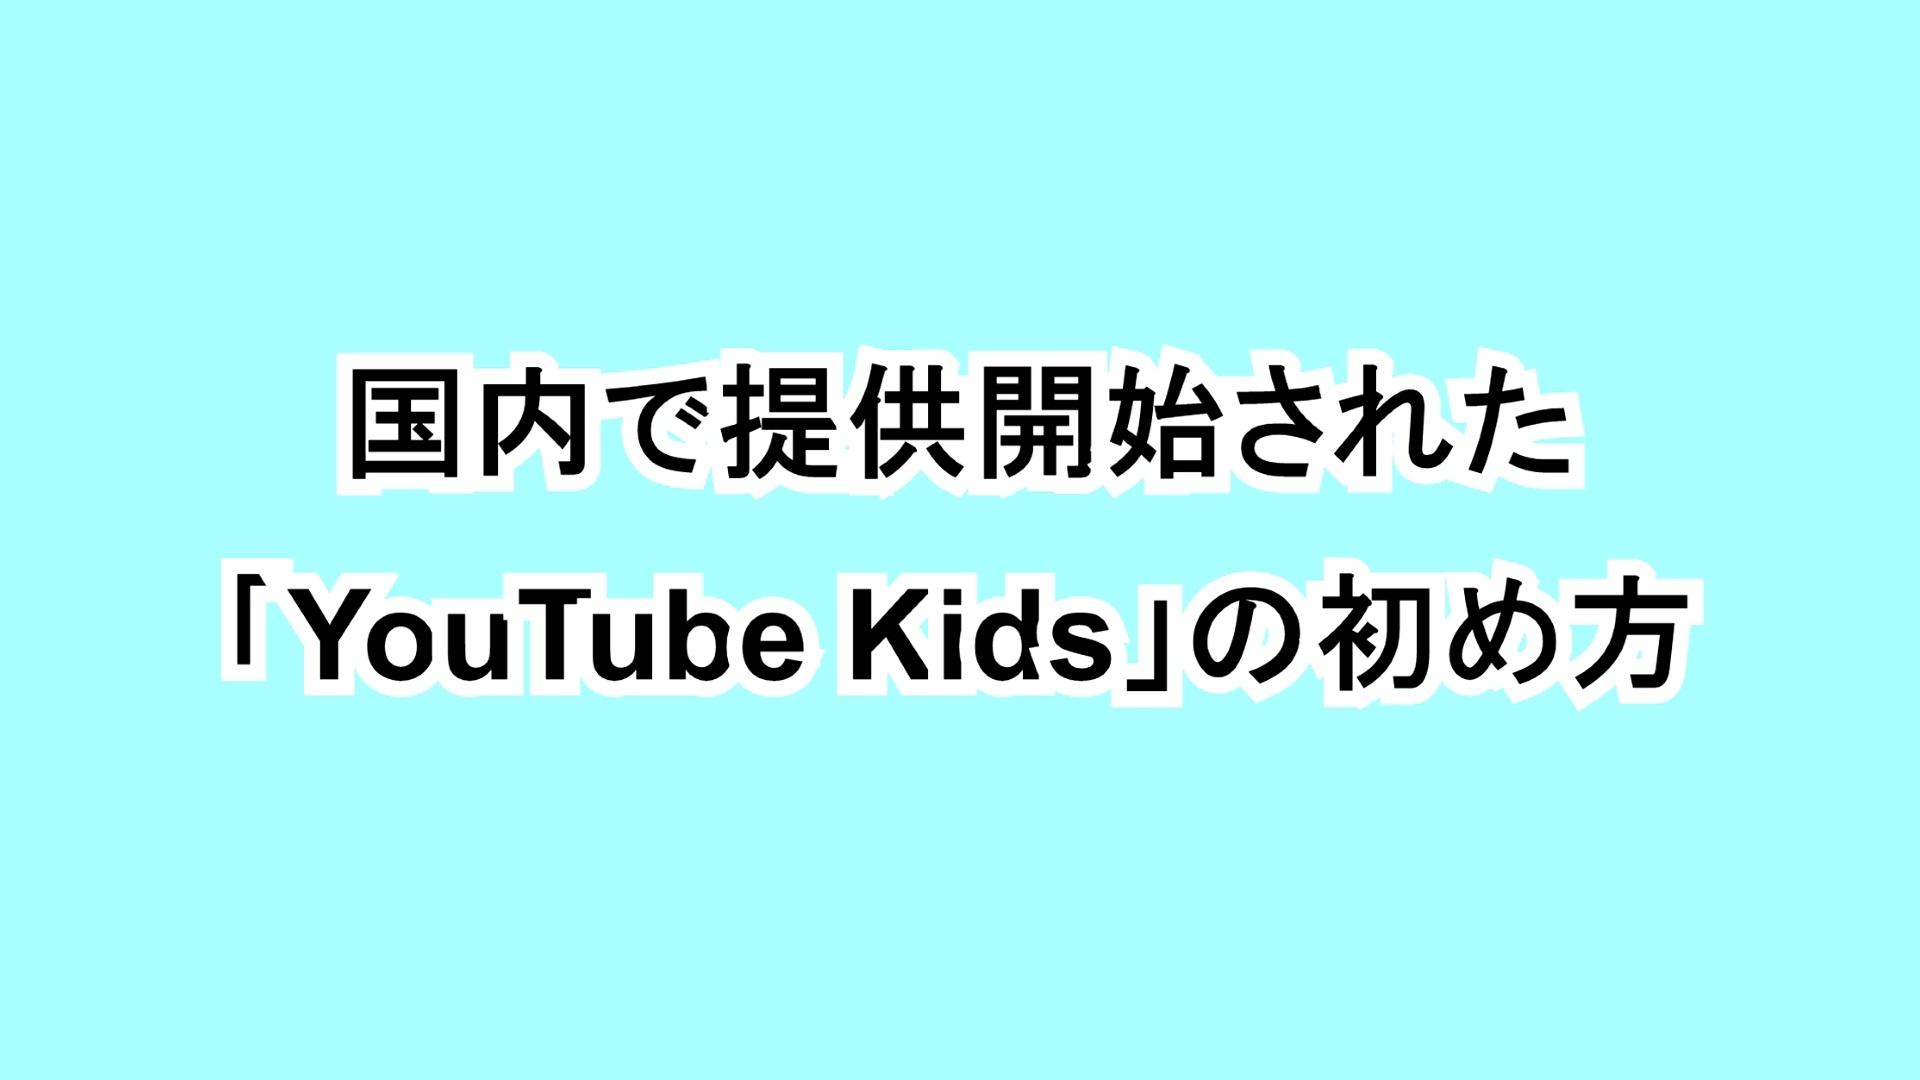 国内で提供開始された「YouTube Kids」の初め方